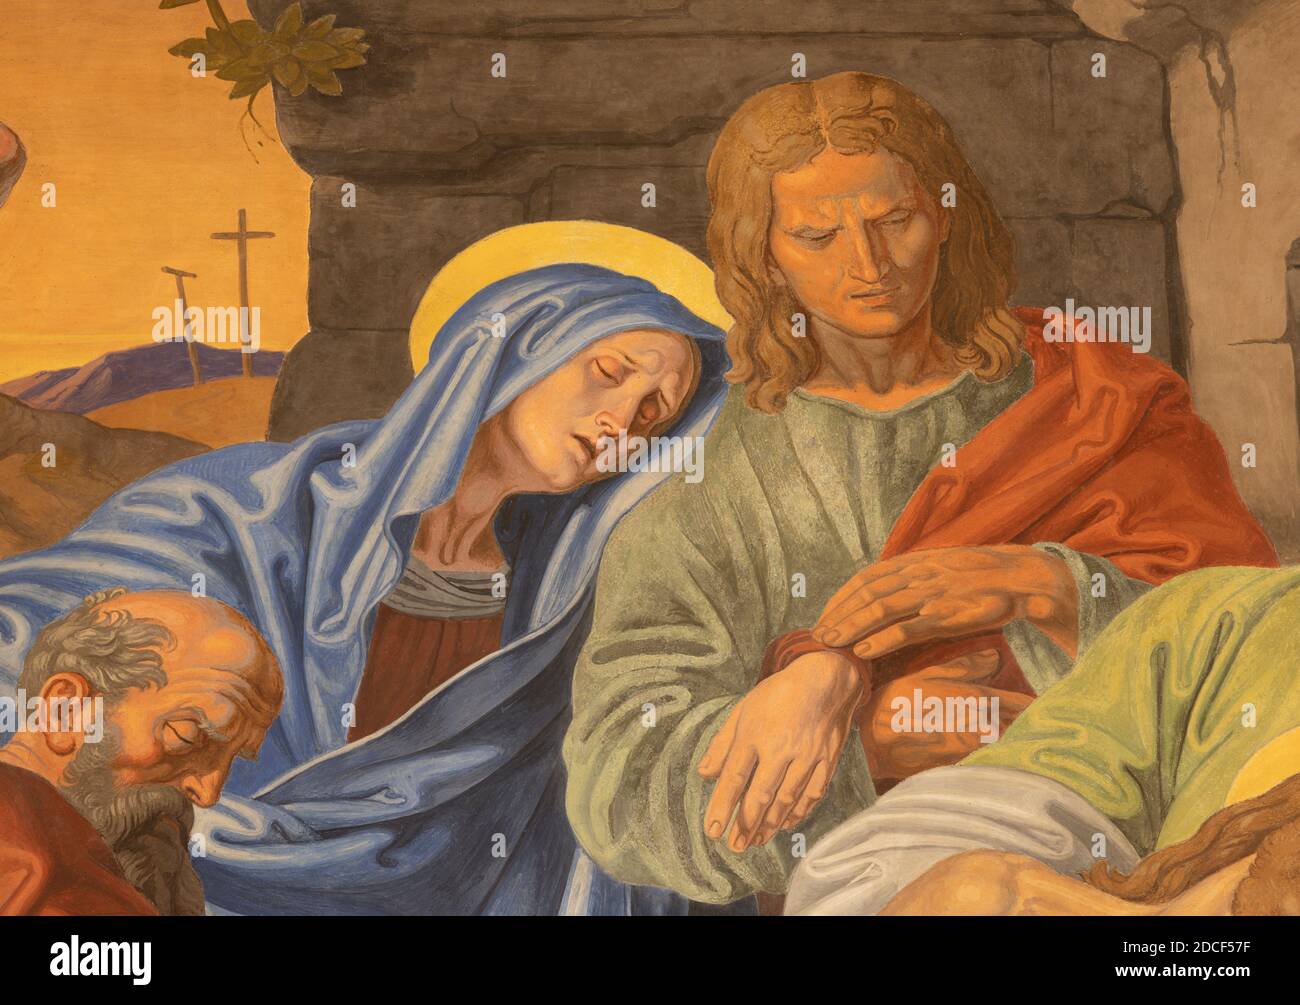 VIENNA, AUSTIRA - 22 OTTOBRE 2020: Il dettaglio dell'affresco di sepoltura di Gesù come parte della stazione di Via Crucis nella chiesa di San Giovanni Nepomuk. Foto Stock